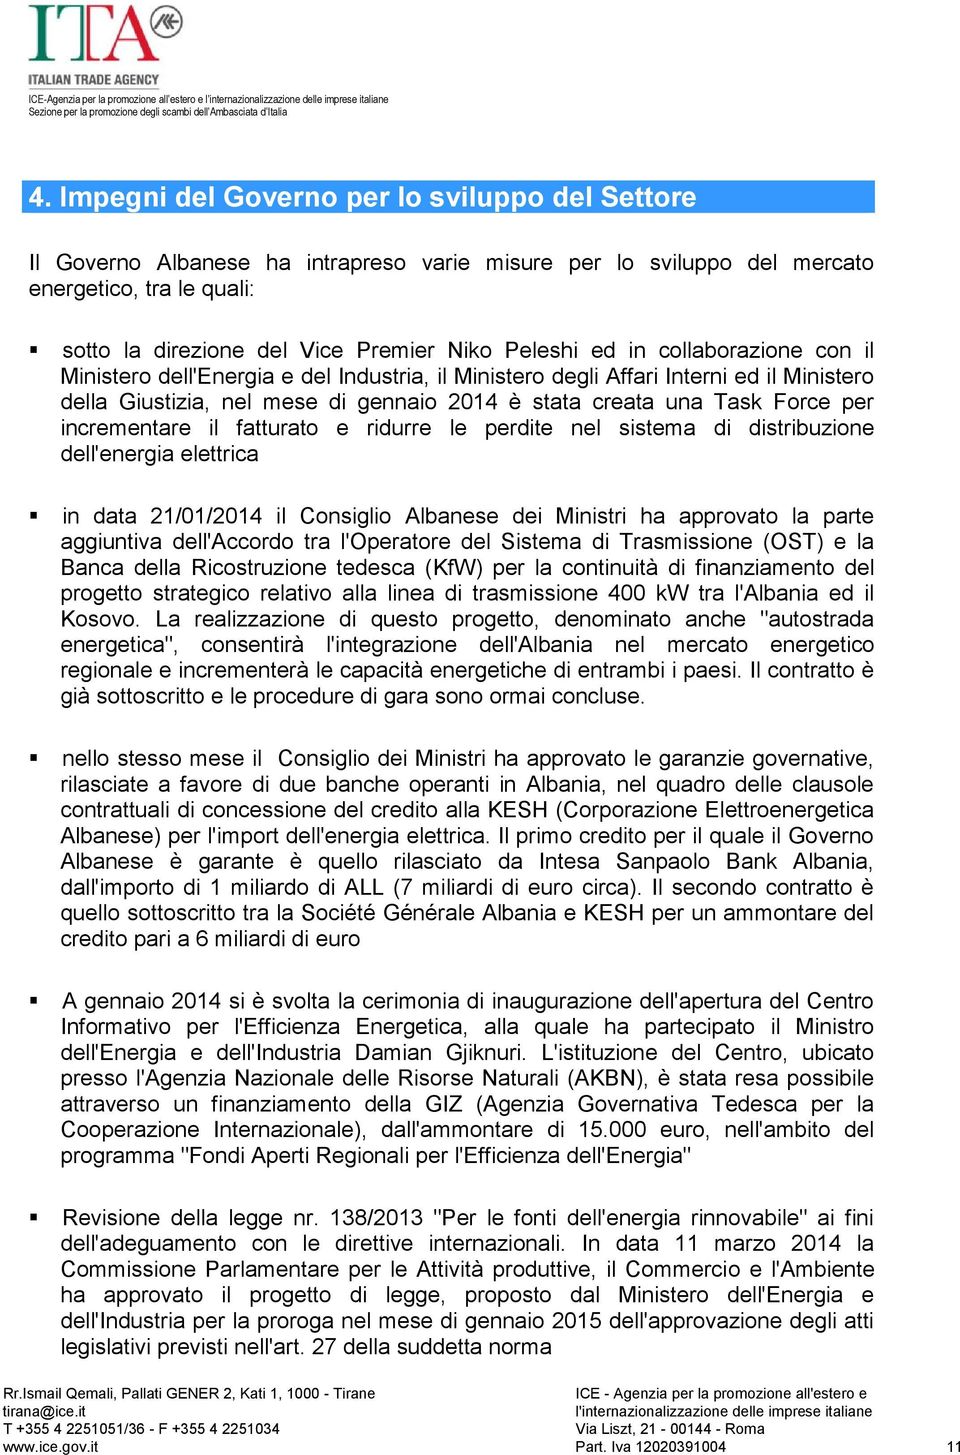 per incrementare il fatturato e ridurre le perdite nel sistema di distribuzione dell'energia elettrica in data 21/01/2014 il Consiglio Albanese dei Ministri ha approvato la parte aggiuntiva